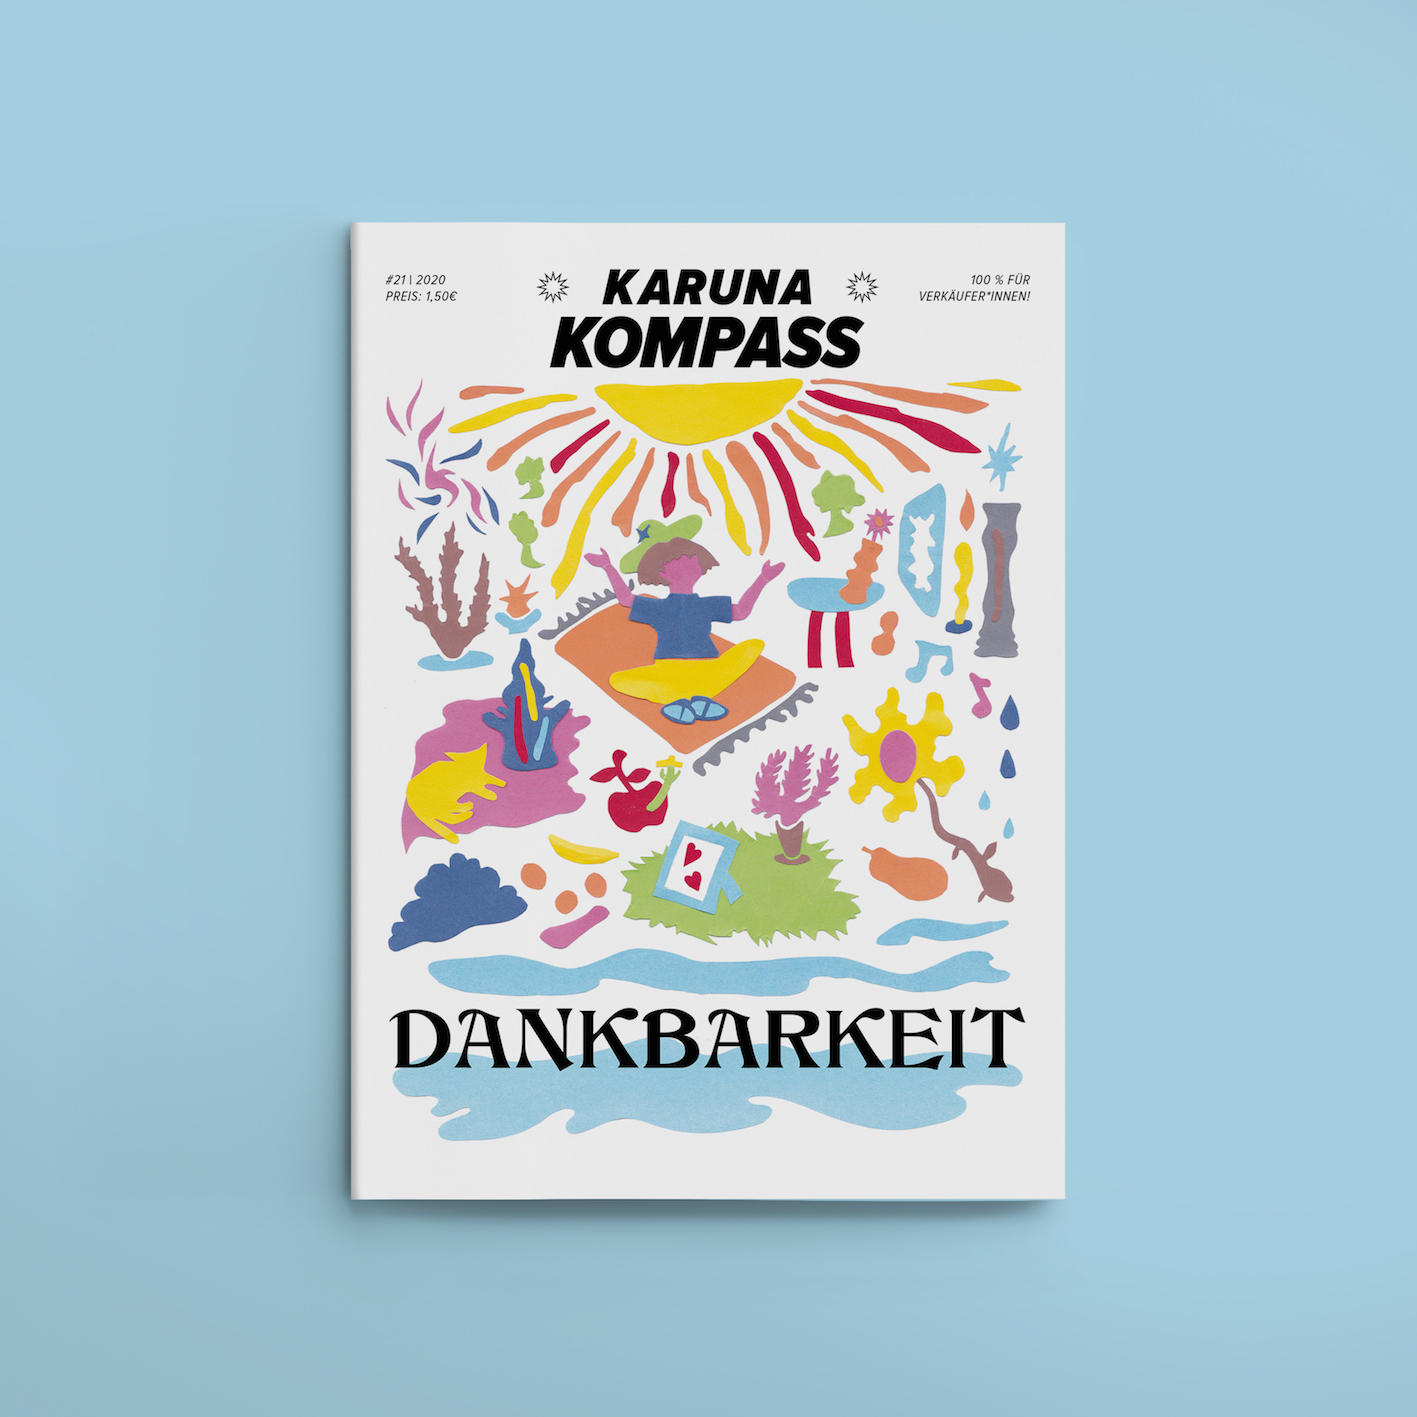 Karuna Kompass #21 Dankbarkeit (Gratitude): 
Art Direction and Graphic Design